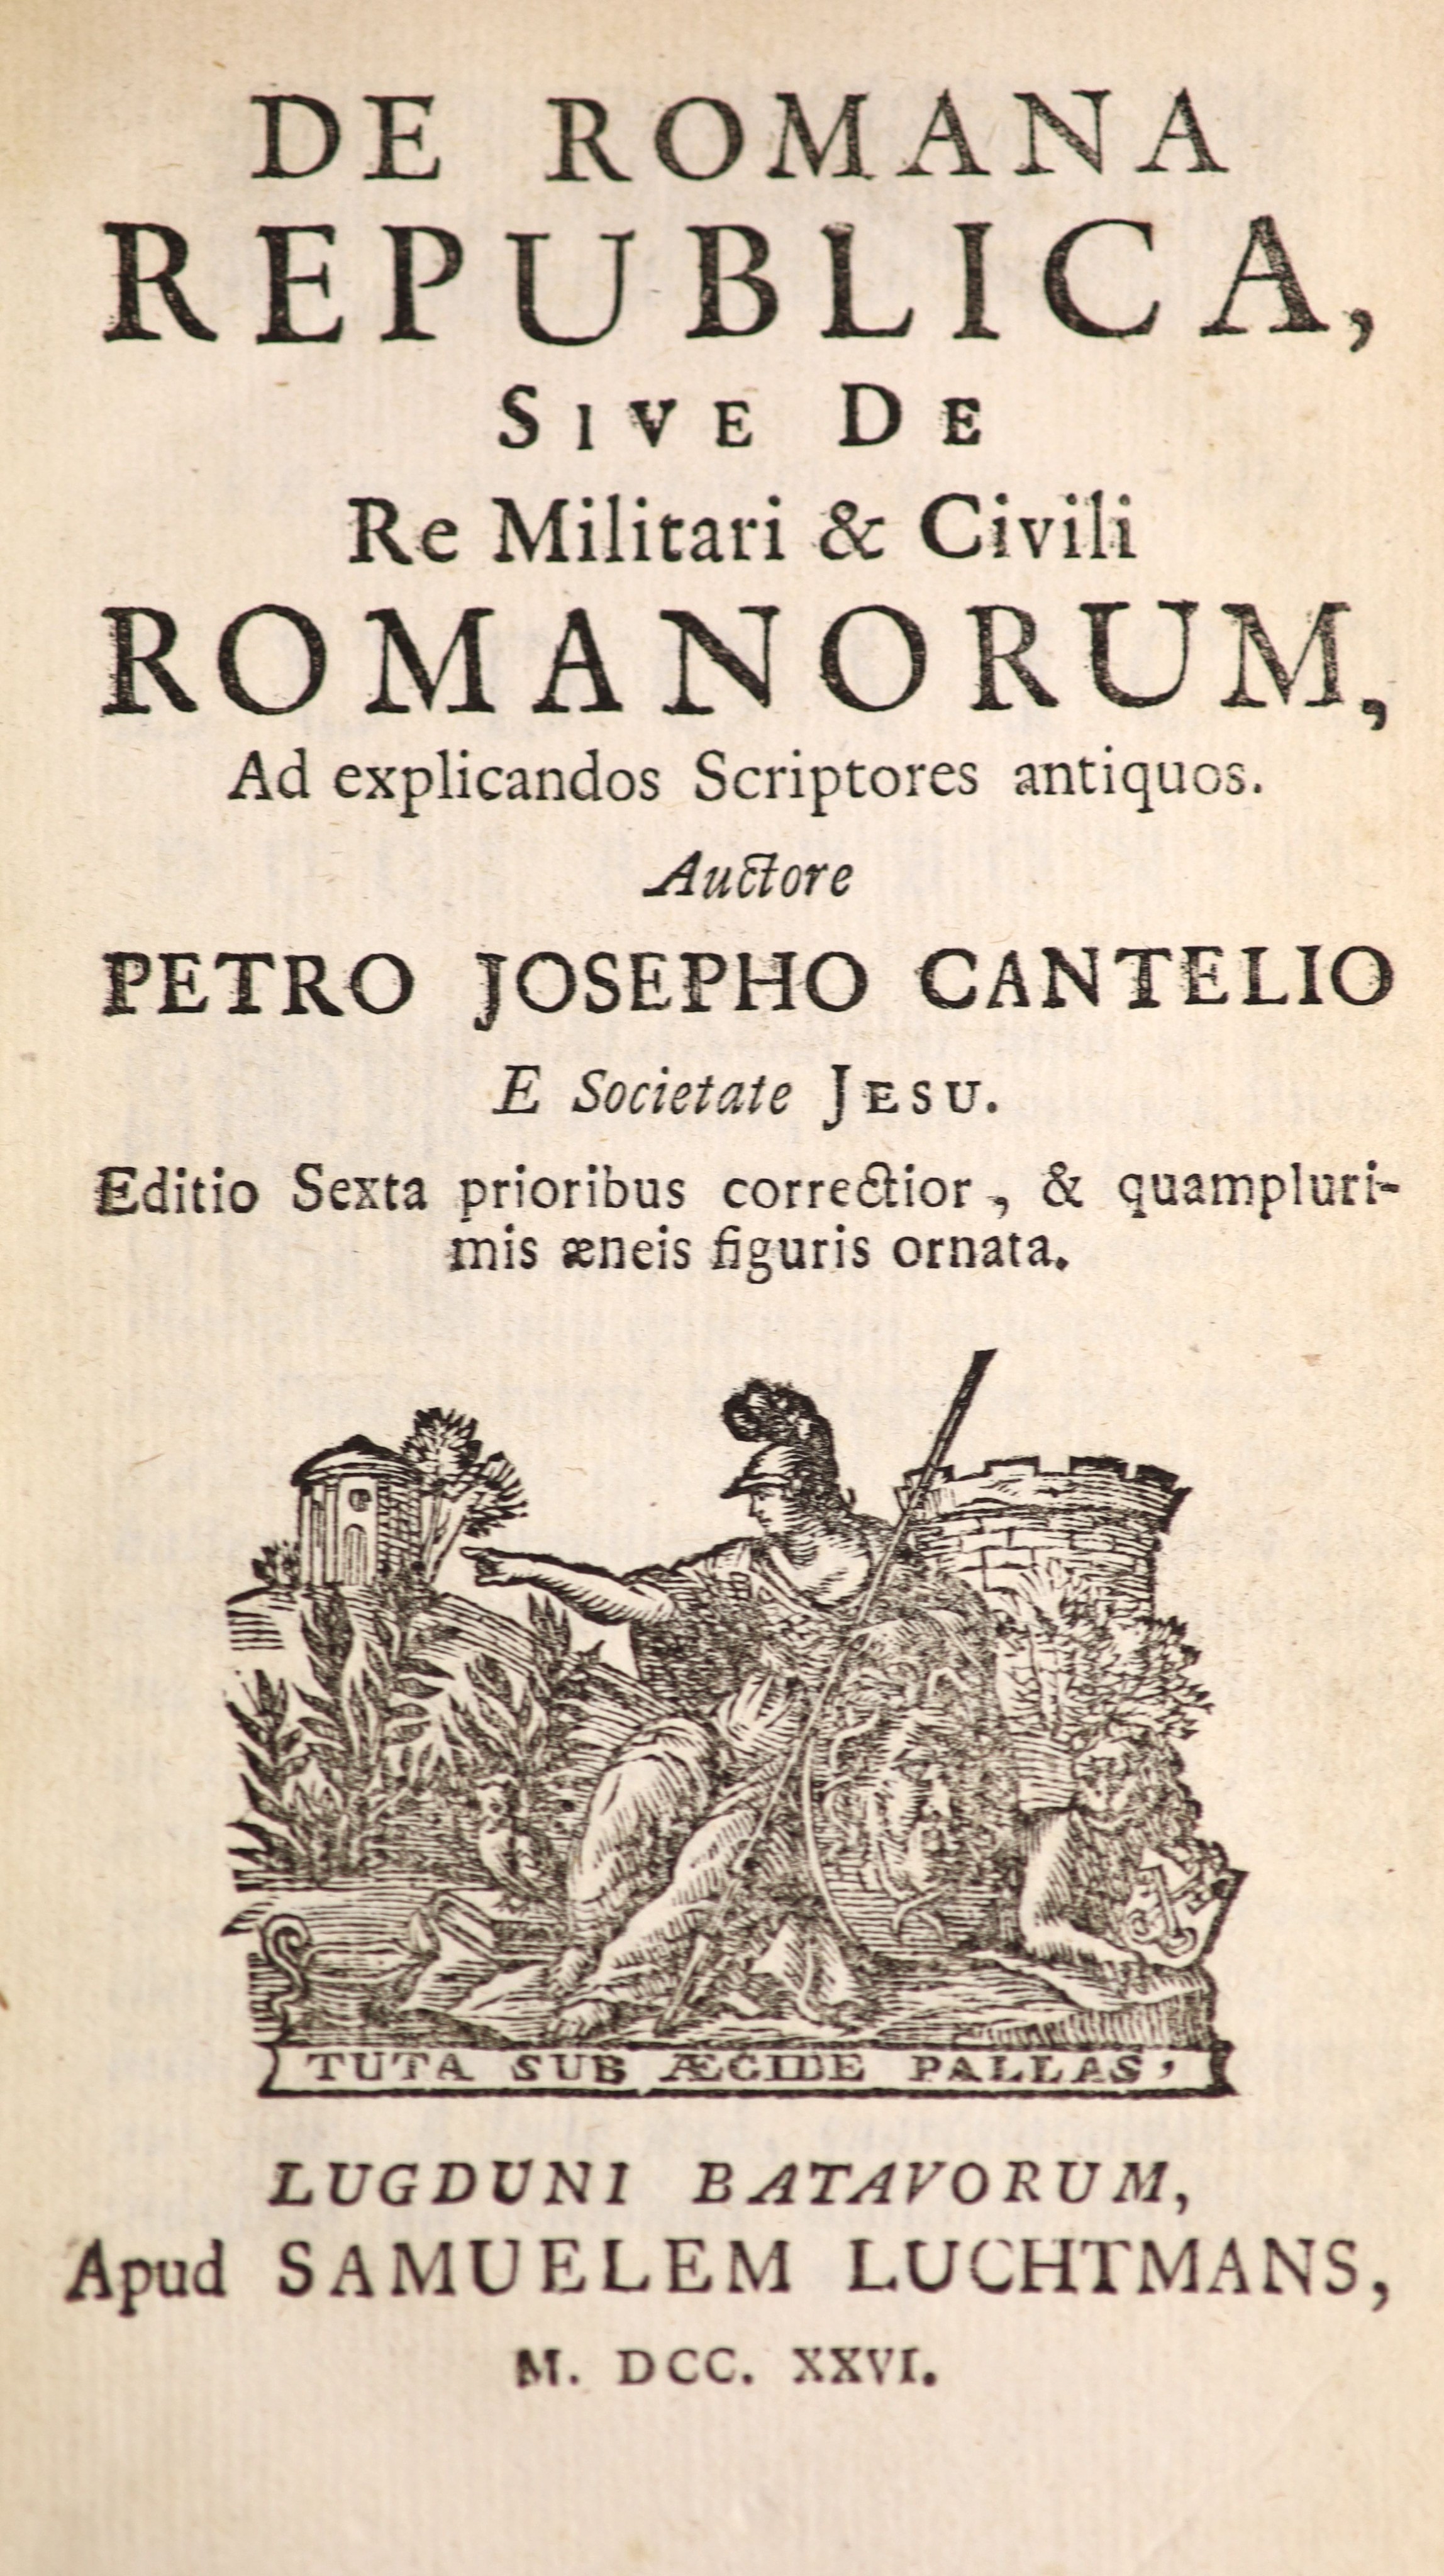 Cantelio, Petro Josepho. De Romana Republica, sive de re Militari et Civili Romanorum ...